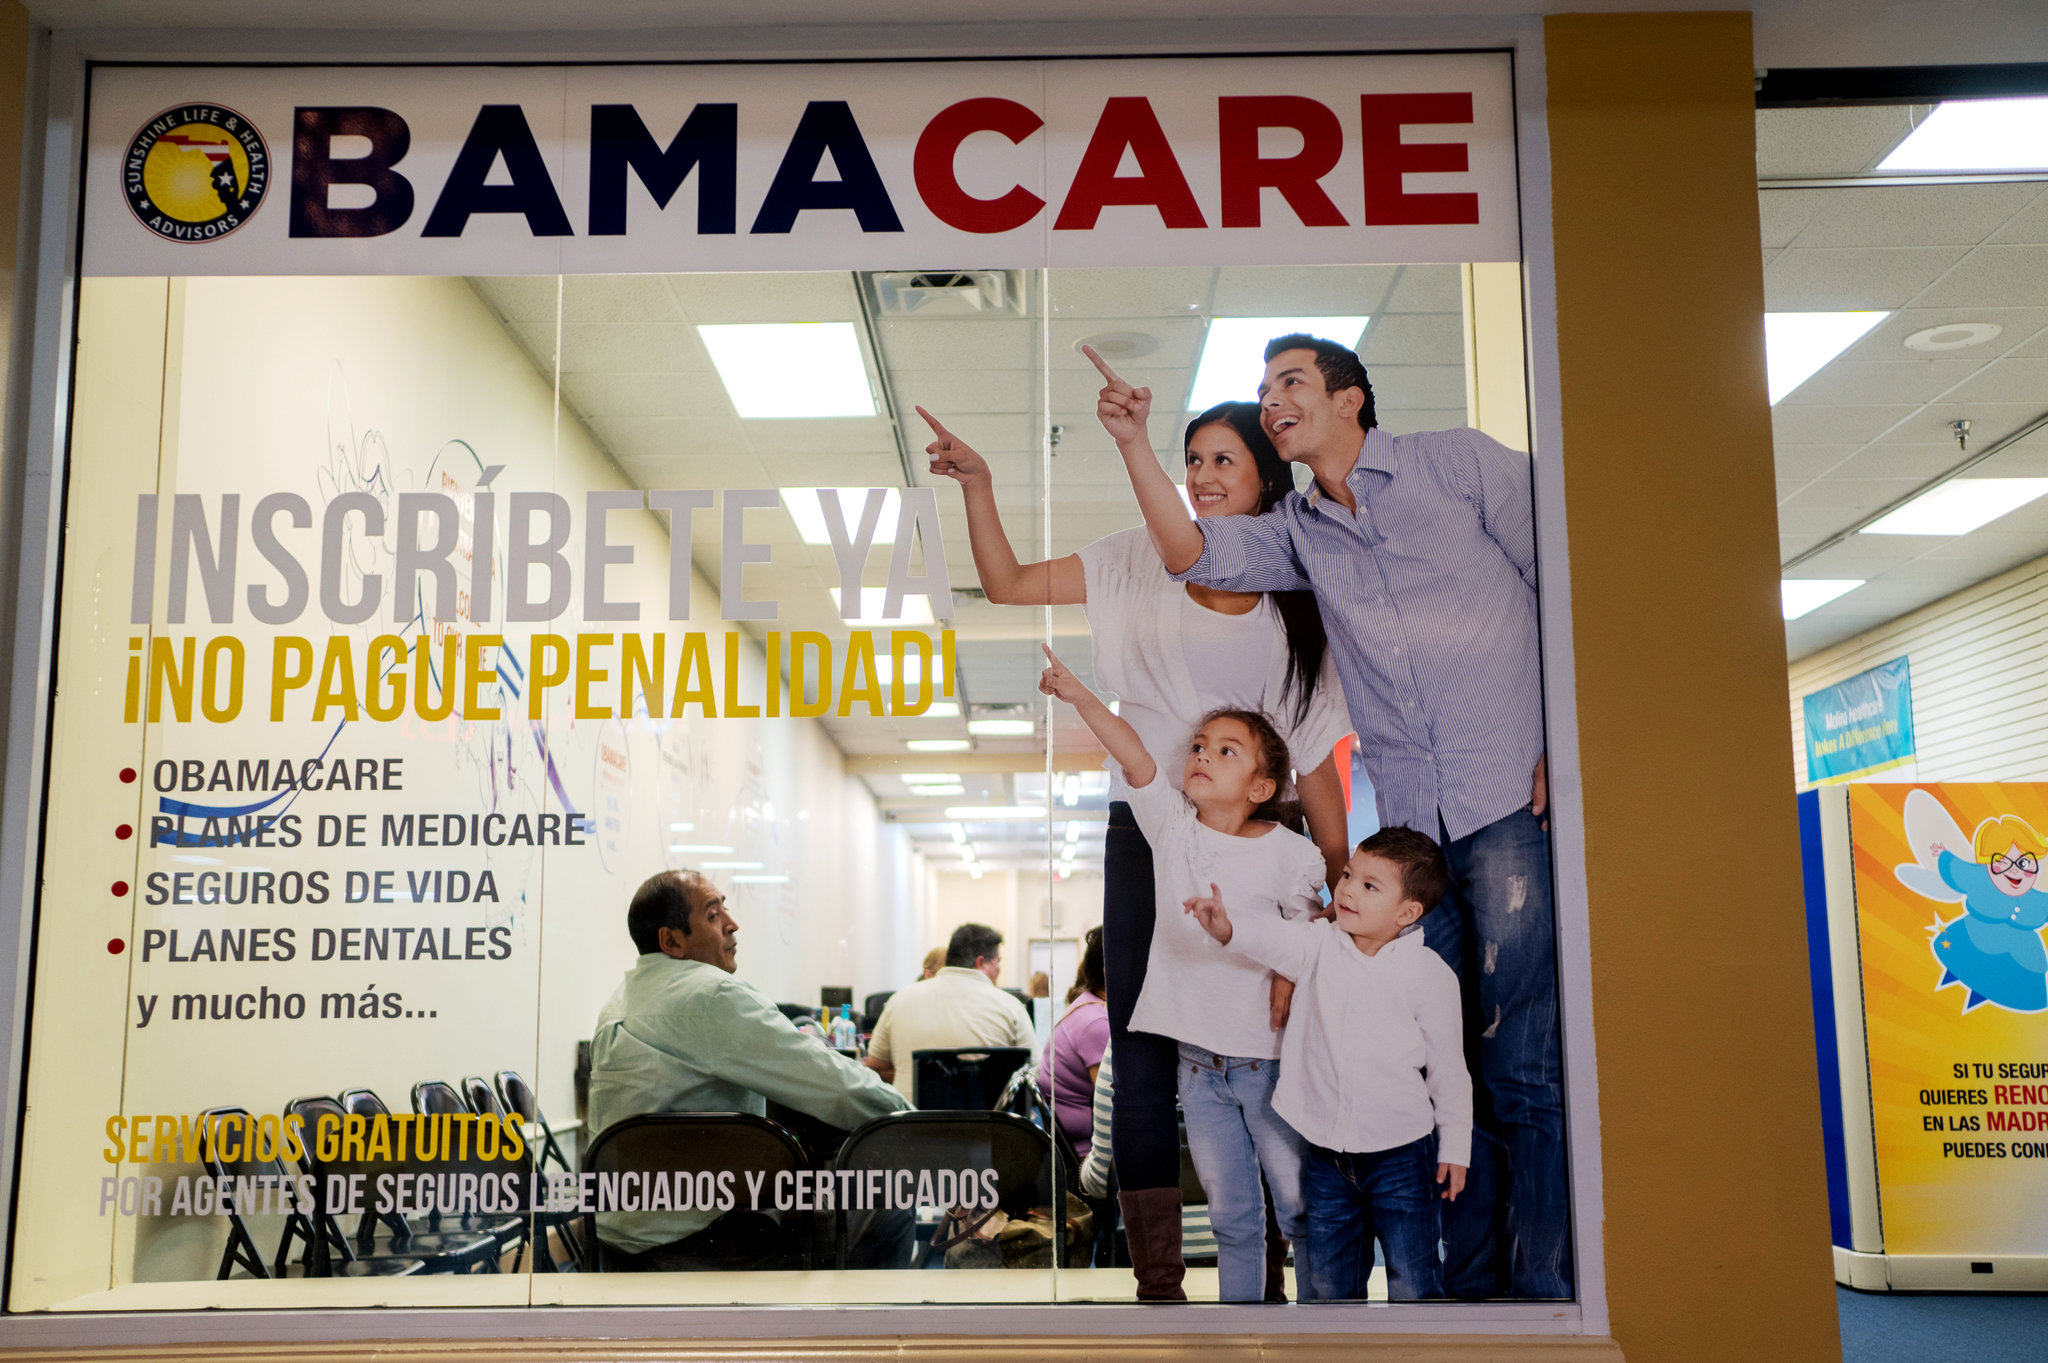 តុលាការ​កំពូល​អាមេរិក​នឹង​បើកសវនាការ​លើ​បណ្តឹង​លុបចោល​ច្បាប់​សុខភាព​ Ob​am​a​care